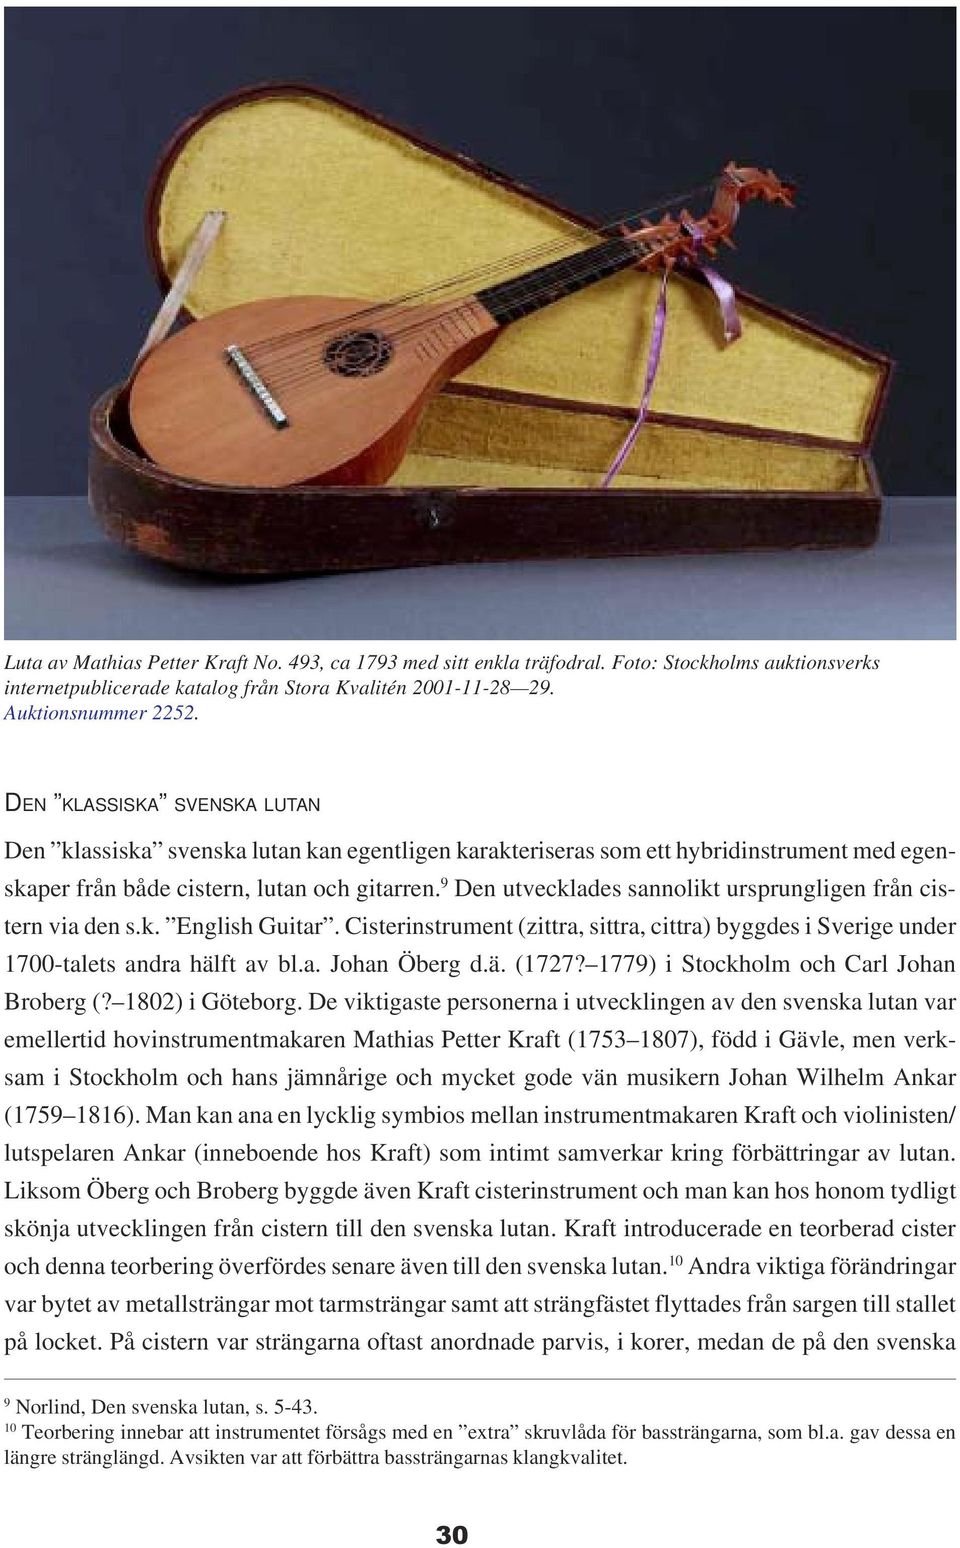 9 Den utvecklades sannolikt ursprungligen från cistern via den s.k. English Guitar. Cisterinstrument (zittra, sittra, cittra) byggdes i Sverige under 1700-talets andra hälft av bl.a. Johan Öberg d.ä. (1727?